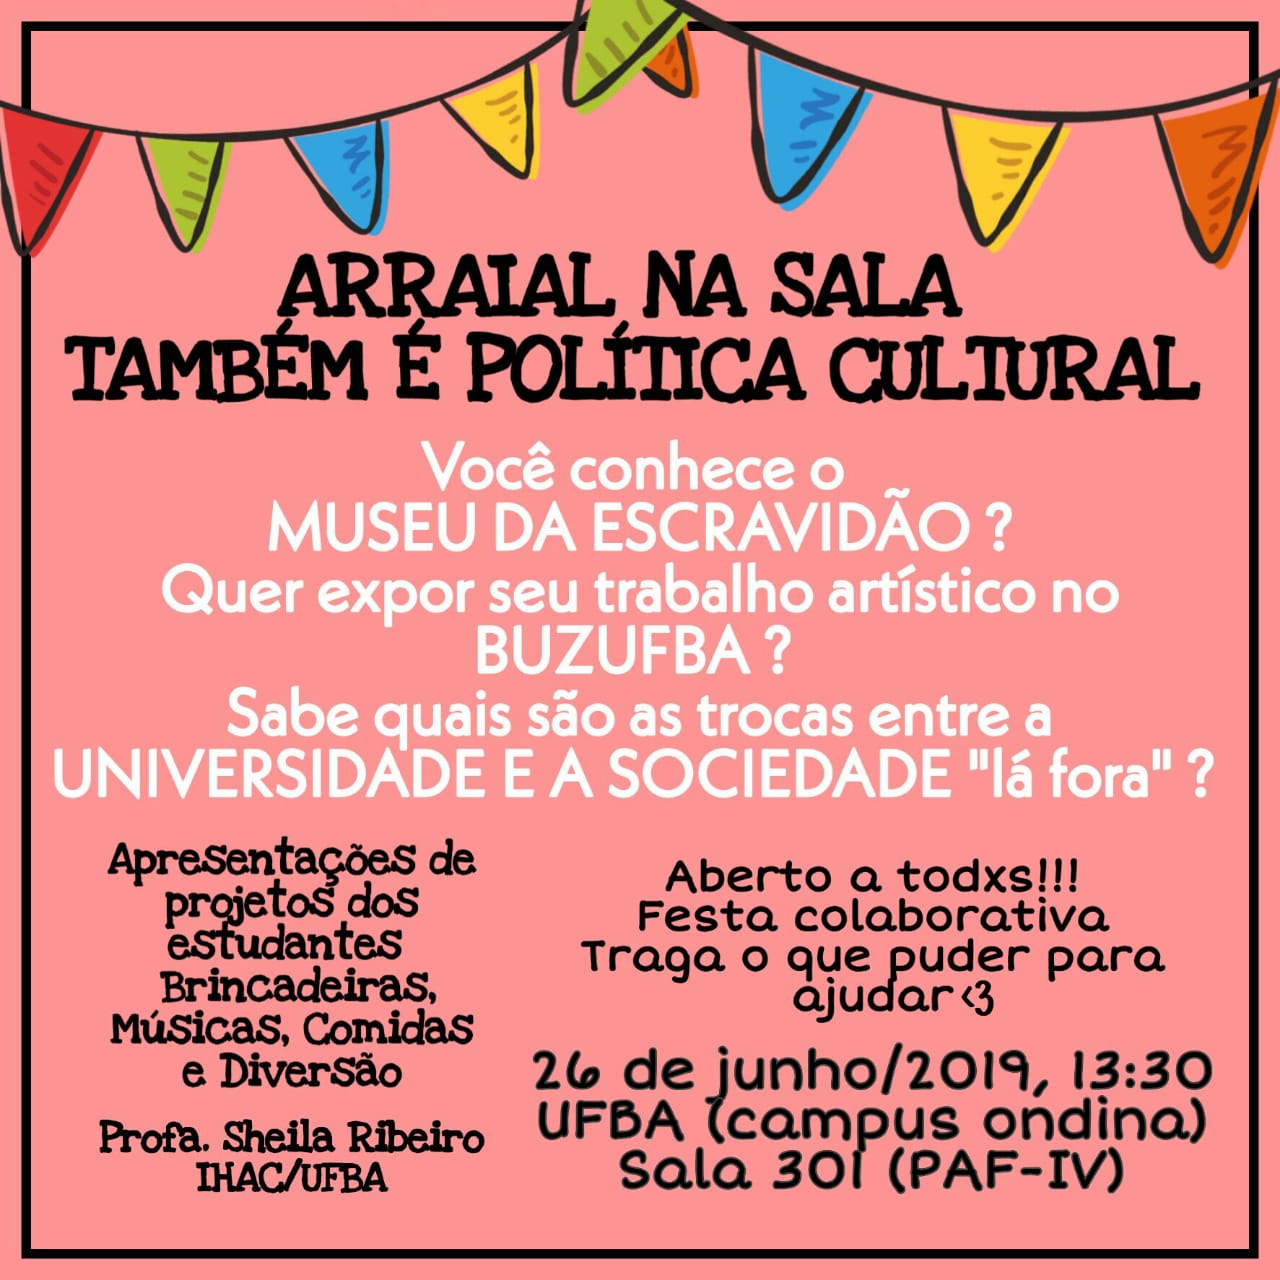 Turma de 2019.1 do componente “Políticas Culturais” convida para Arraial na Sala